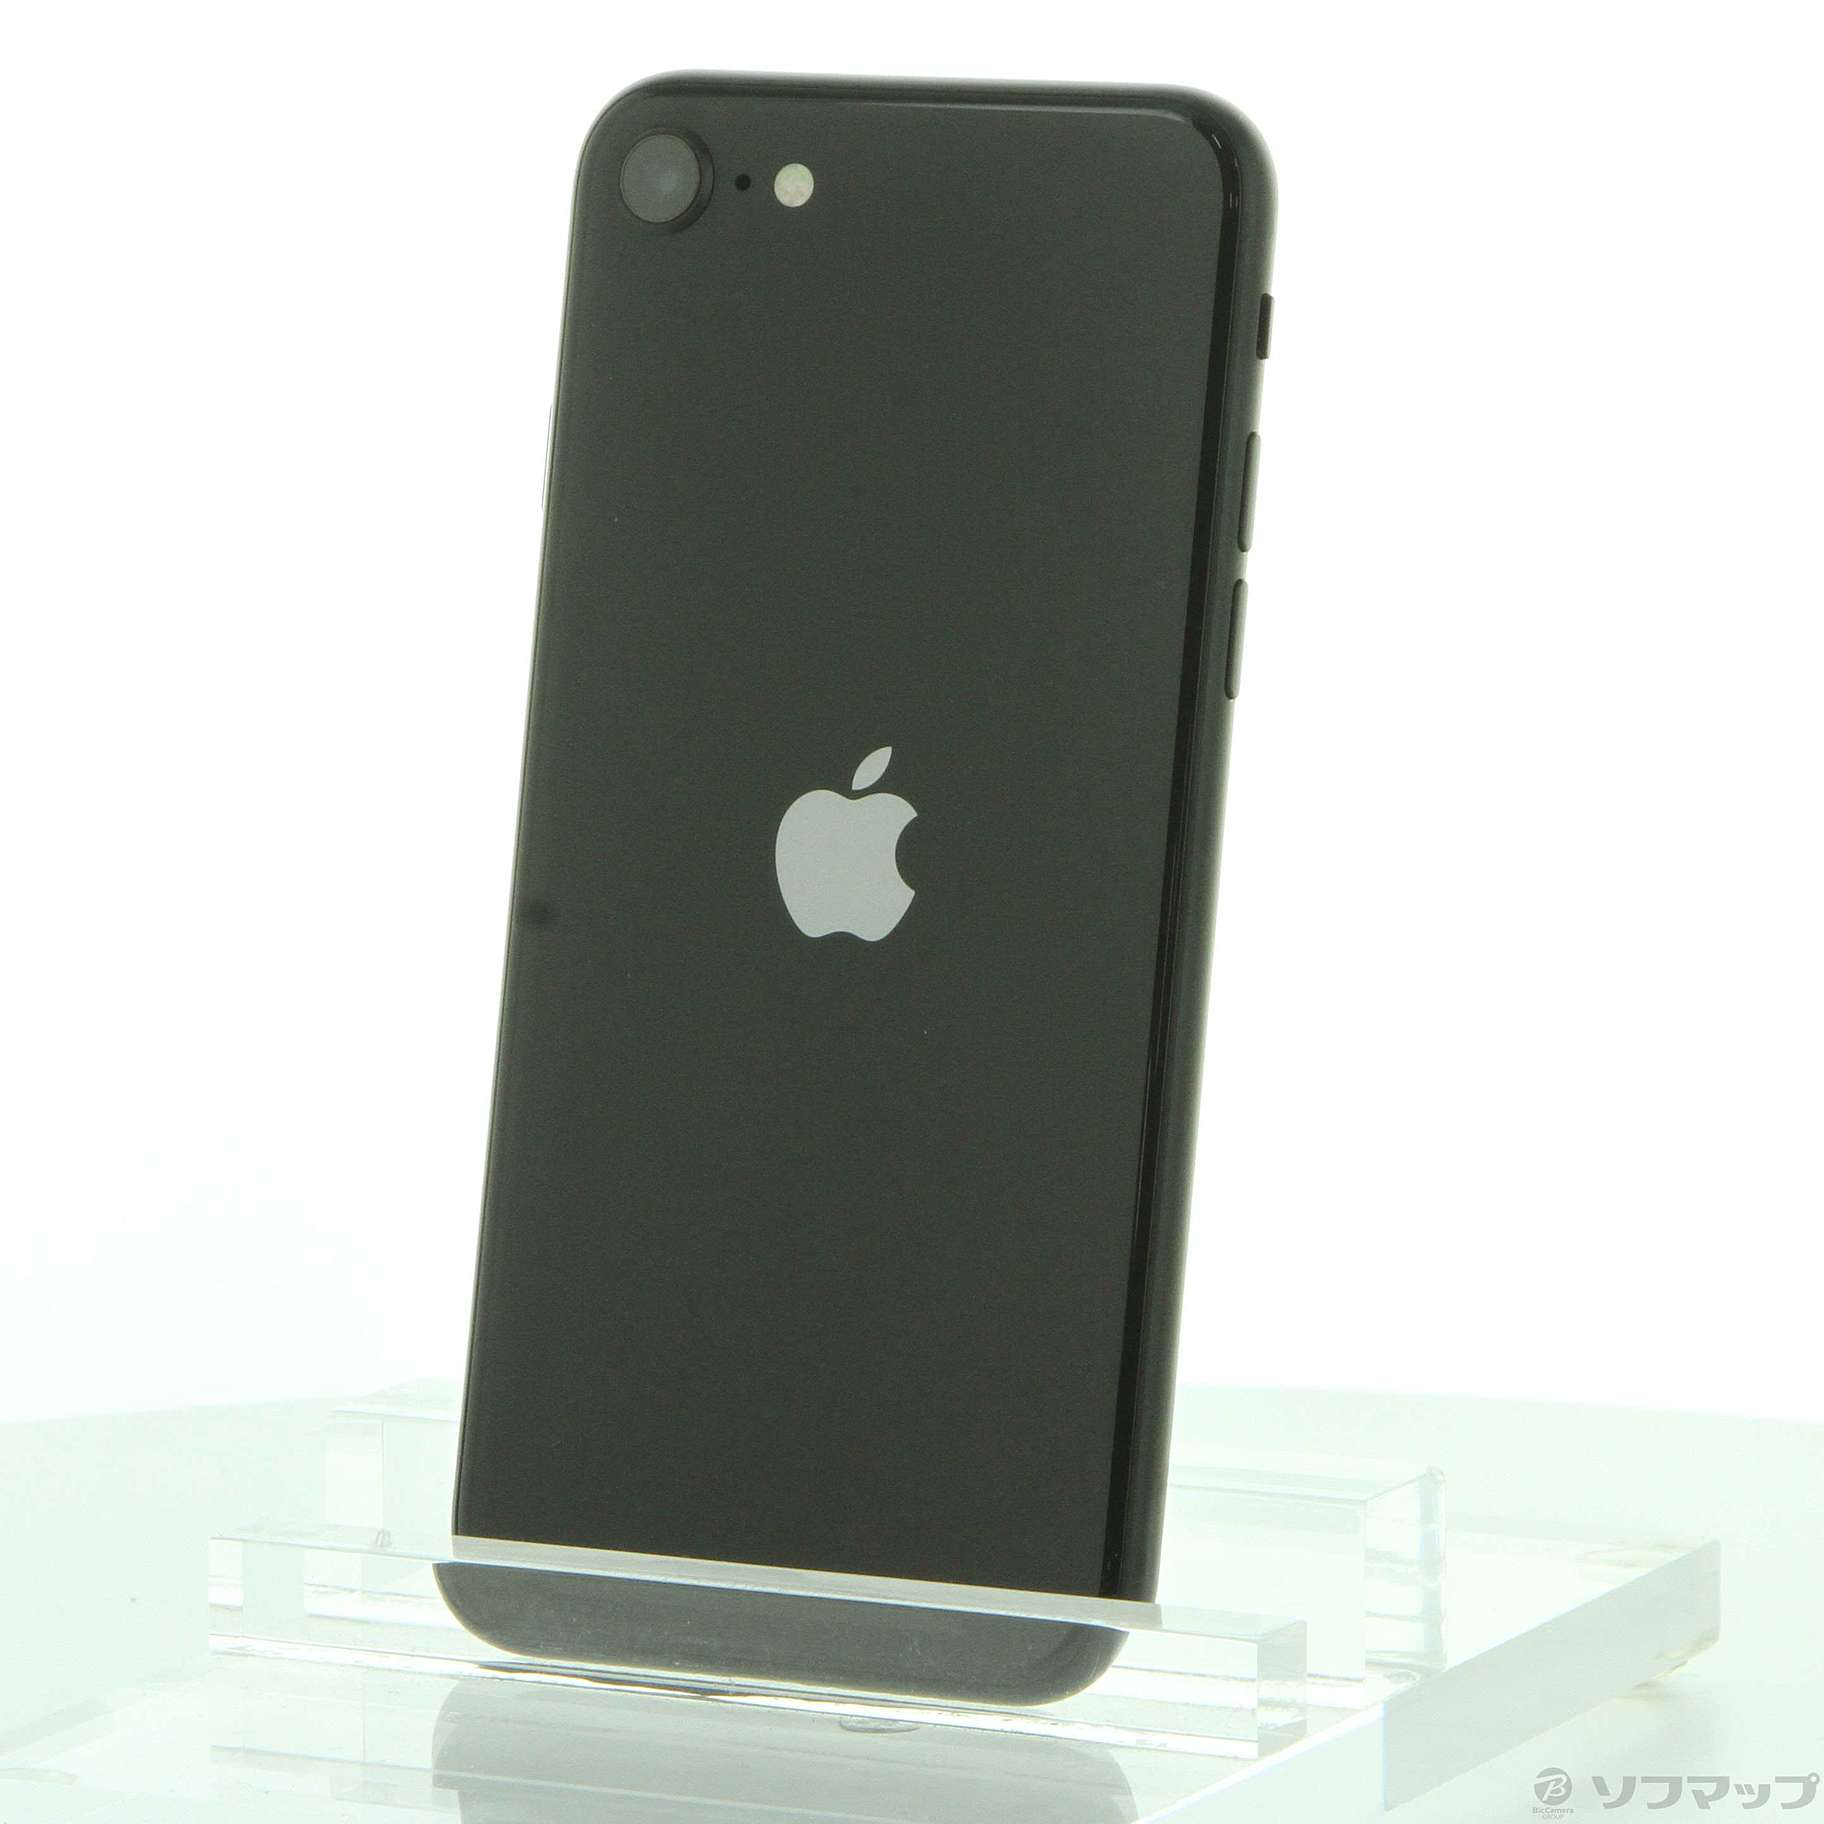 正規店人気docomo MX9R2J/A iPhone SE(第2世代) 64GB ブラック do iPhone